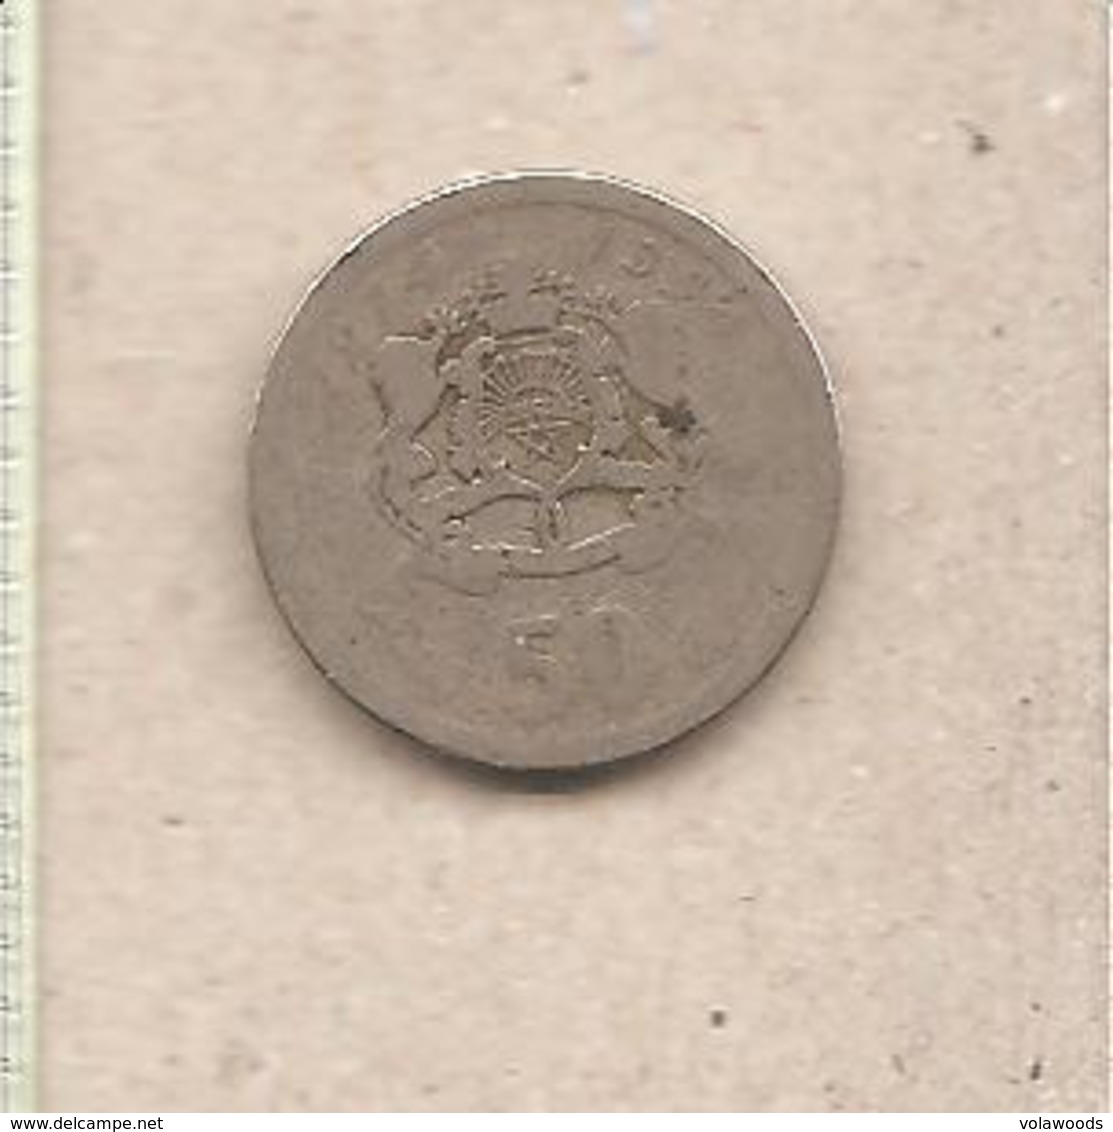 Marocco - Moneta Circolata Da 50 Santimat - 1974 - Marruecos